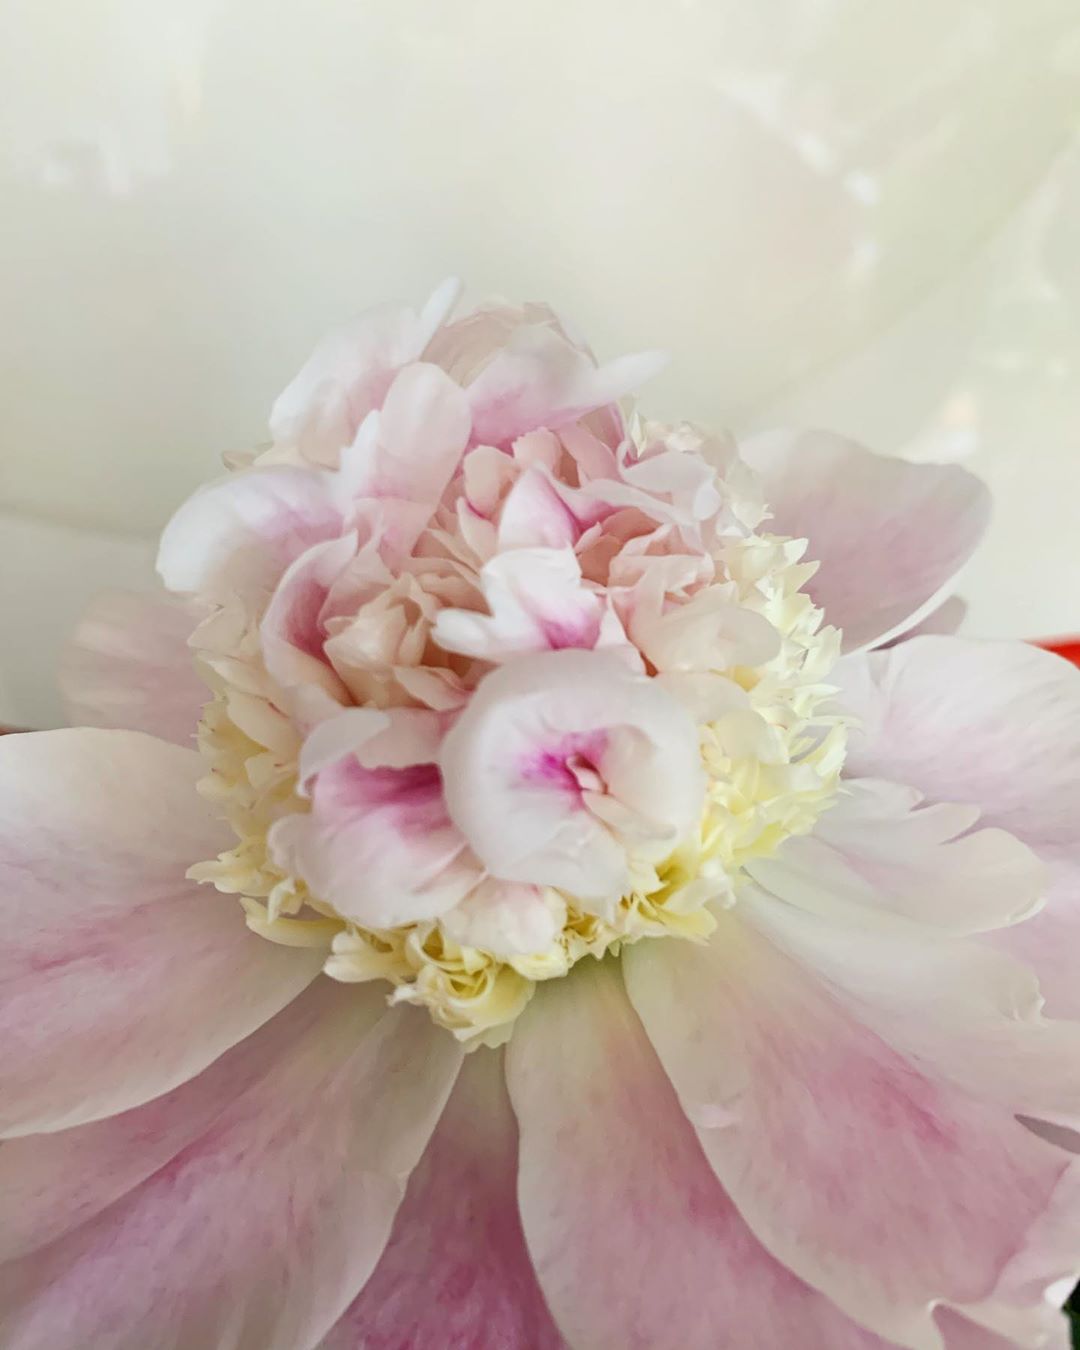 早坂香須子 優しい花かんむりみたい 花の構造はシンプルで 雄と雌の部分をたくさんの花びらが取り囲んでいる 存在するだけで幸せにしてくれる花たちはとても女性的だと思うけ Wacoca Japan People Life Style